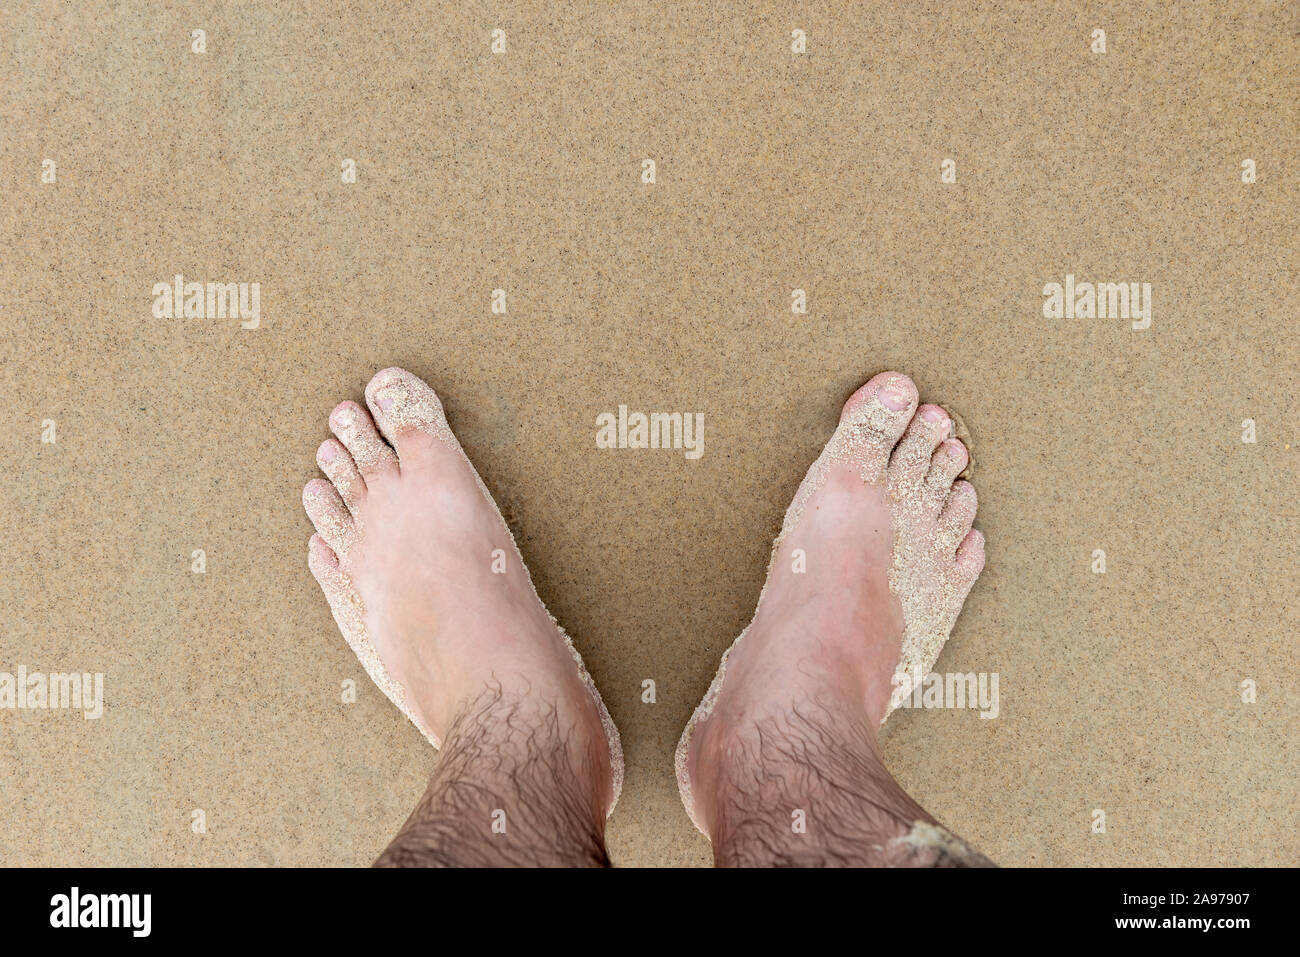 Pies masculinos arena de playa vacaciones vacaciones húmedo de mediana edad conseguir unas piernas suaves dedos Foto de stock